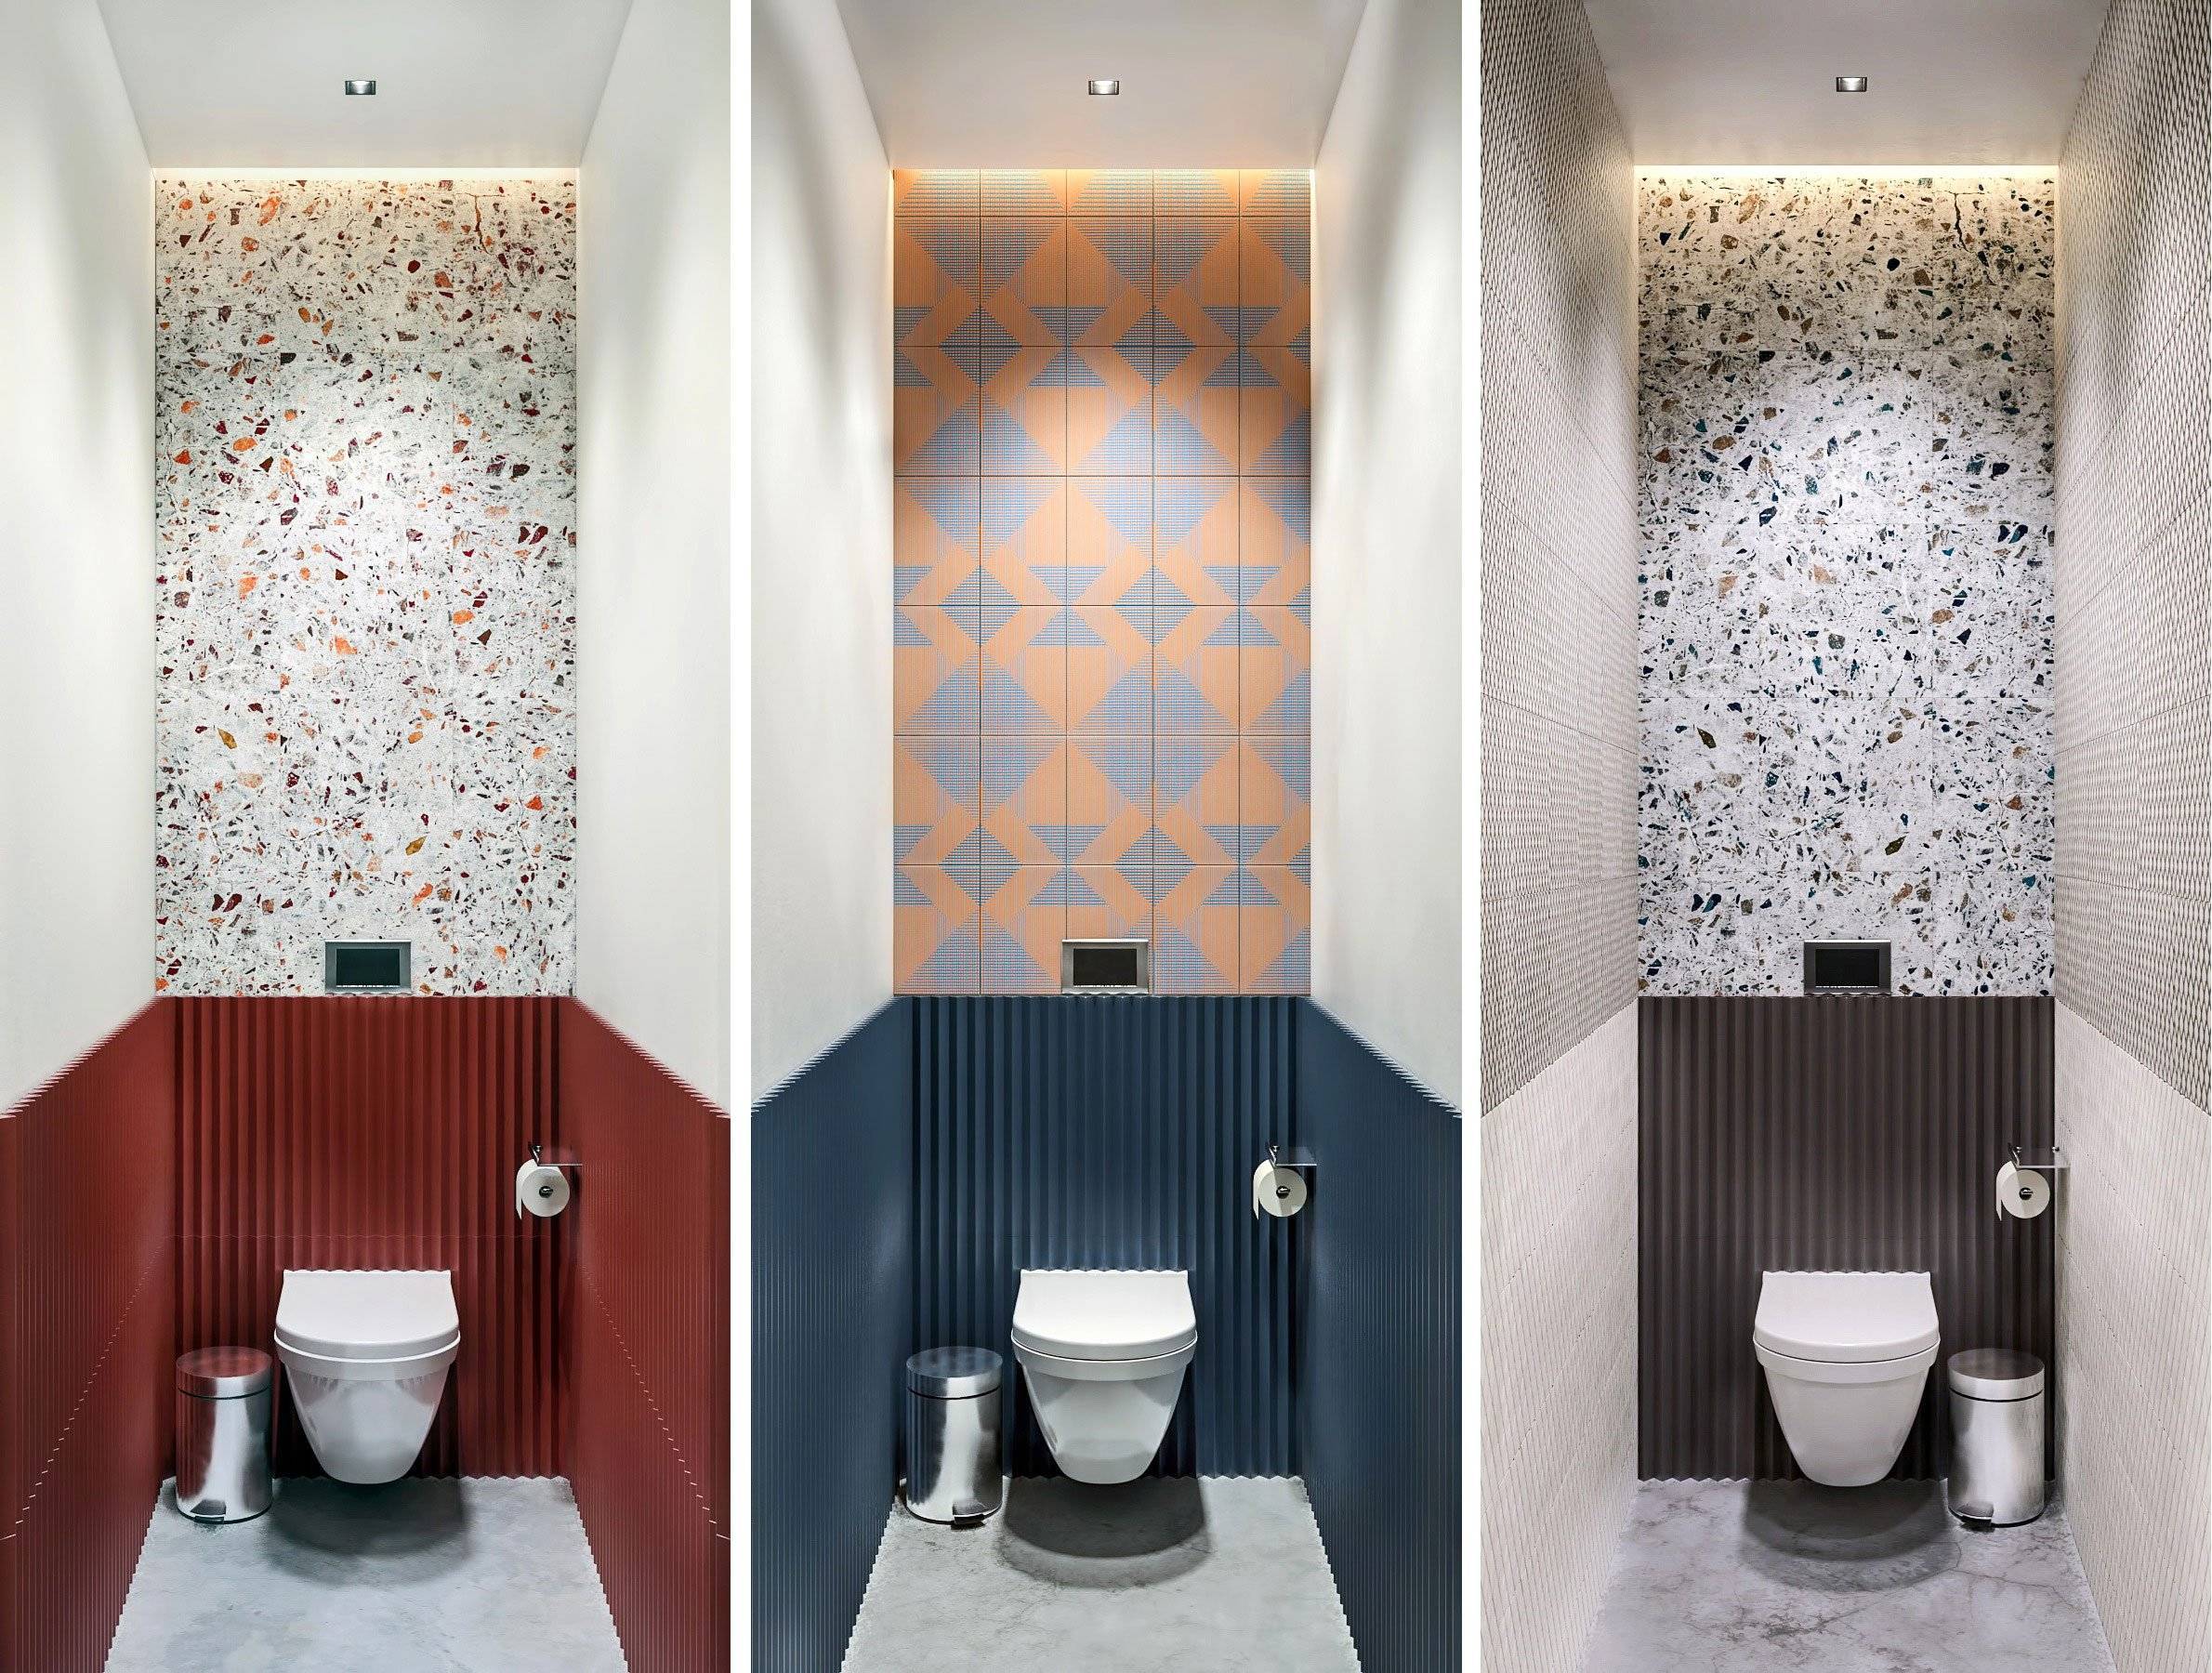 Дизайн отделки плиткой в туалете 2020-2021 года